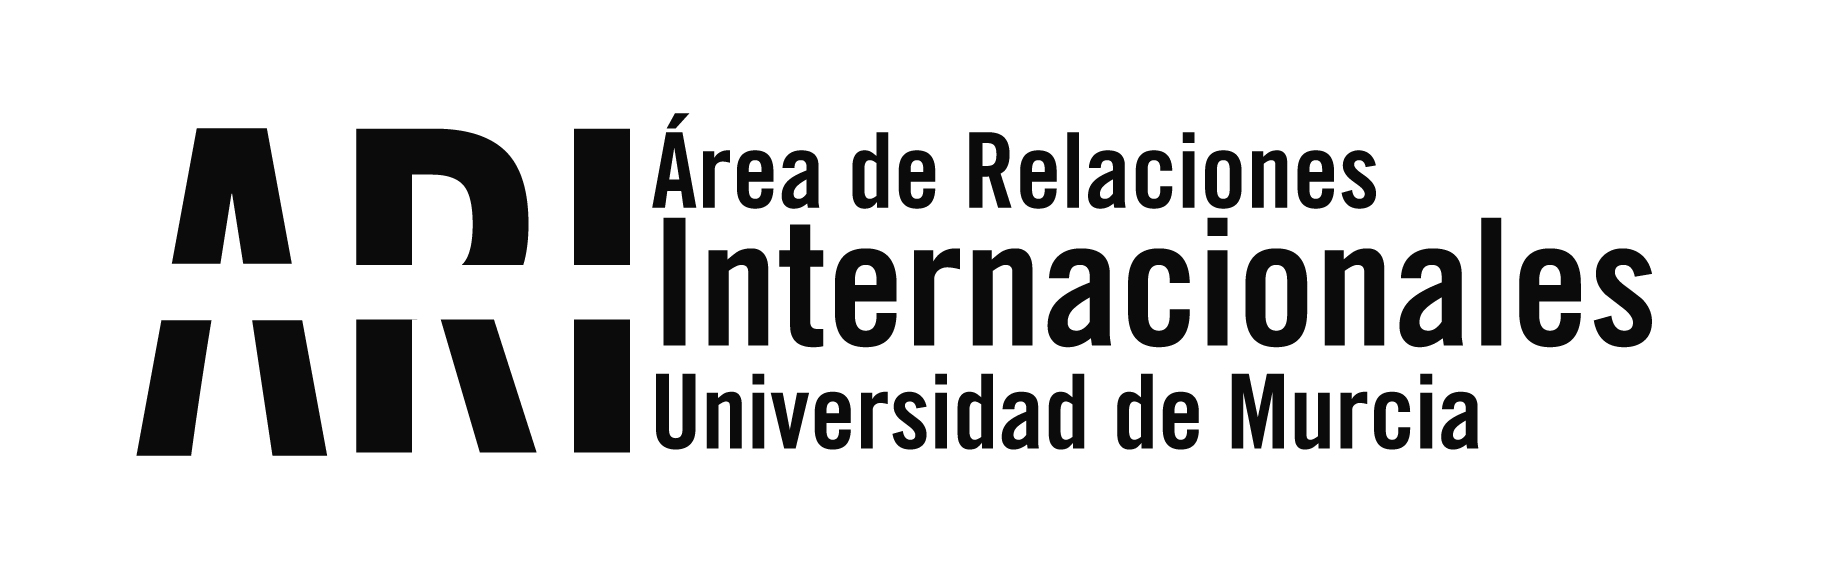 La Universidad de Murcia recibe a una delegación de universidades de la India y Nepal - Área de Relaciones Internacionales